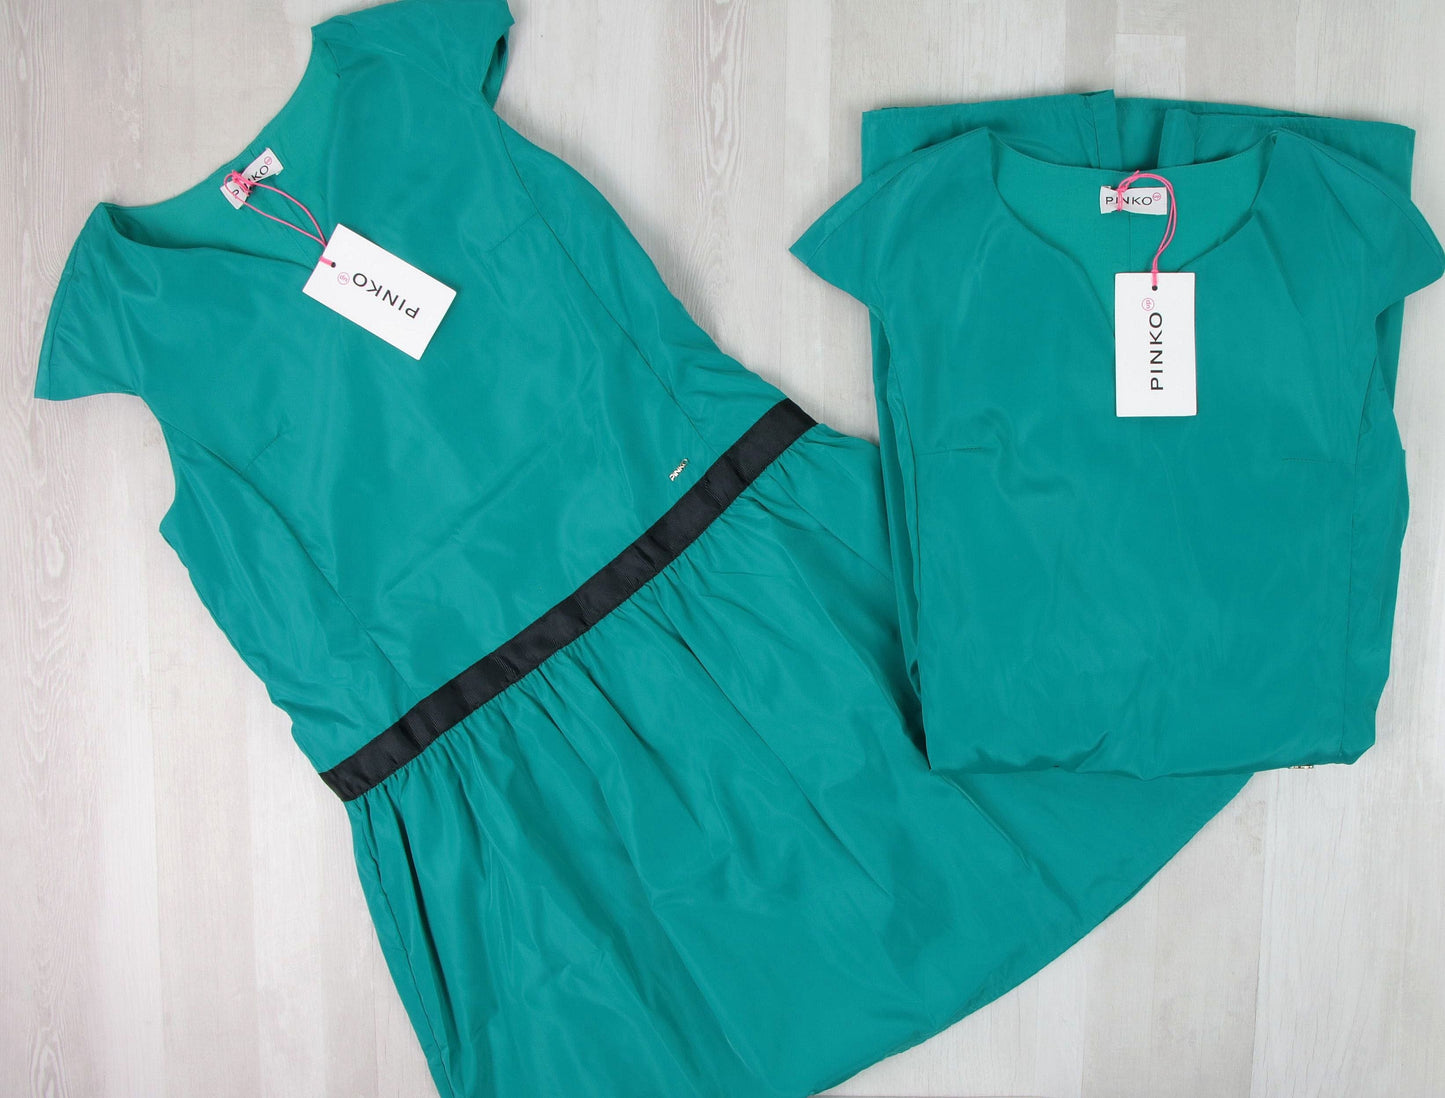 stock abbigliamento donna - €17,00 al pezzo PINKO, MARESE 28 pezzi da bambina - P/E - RIF. 3907